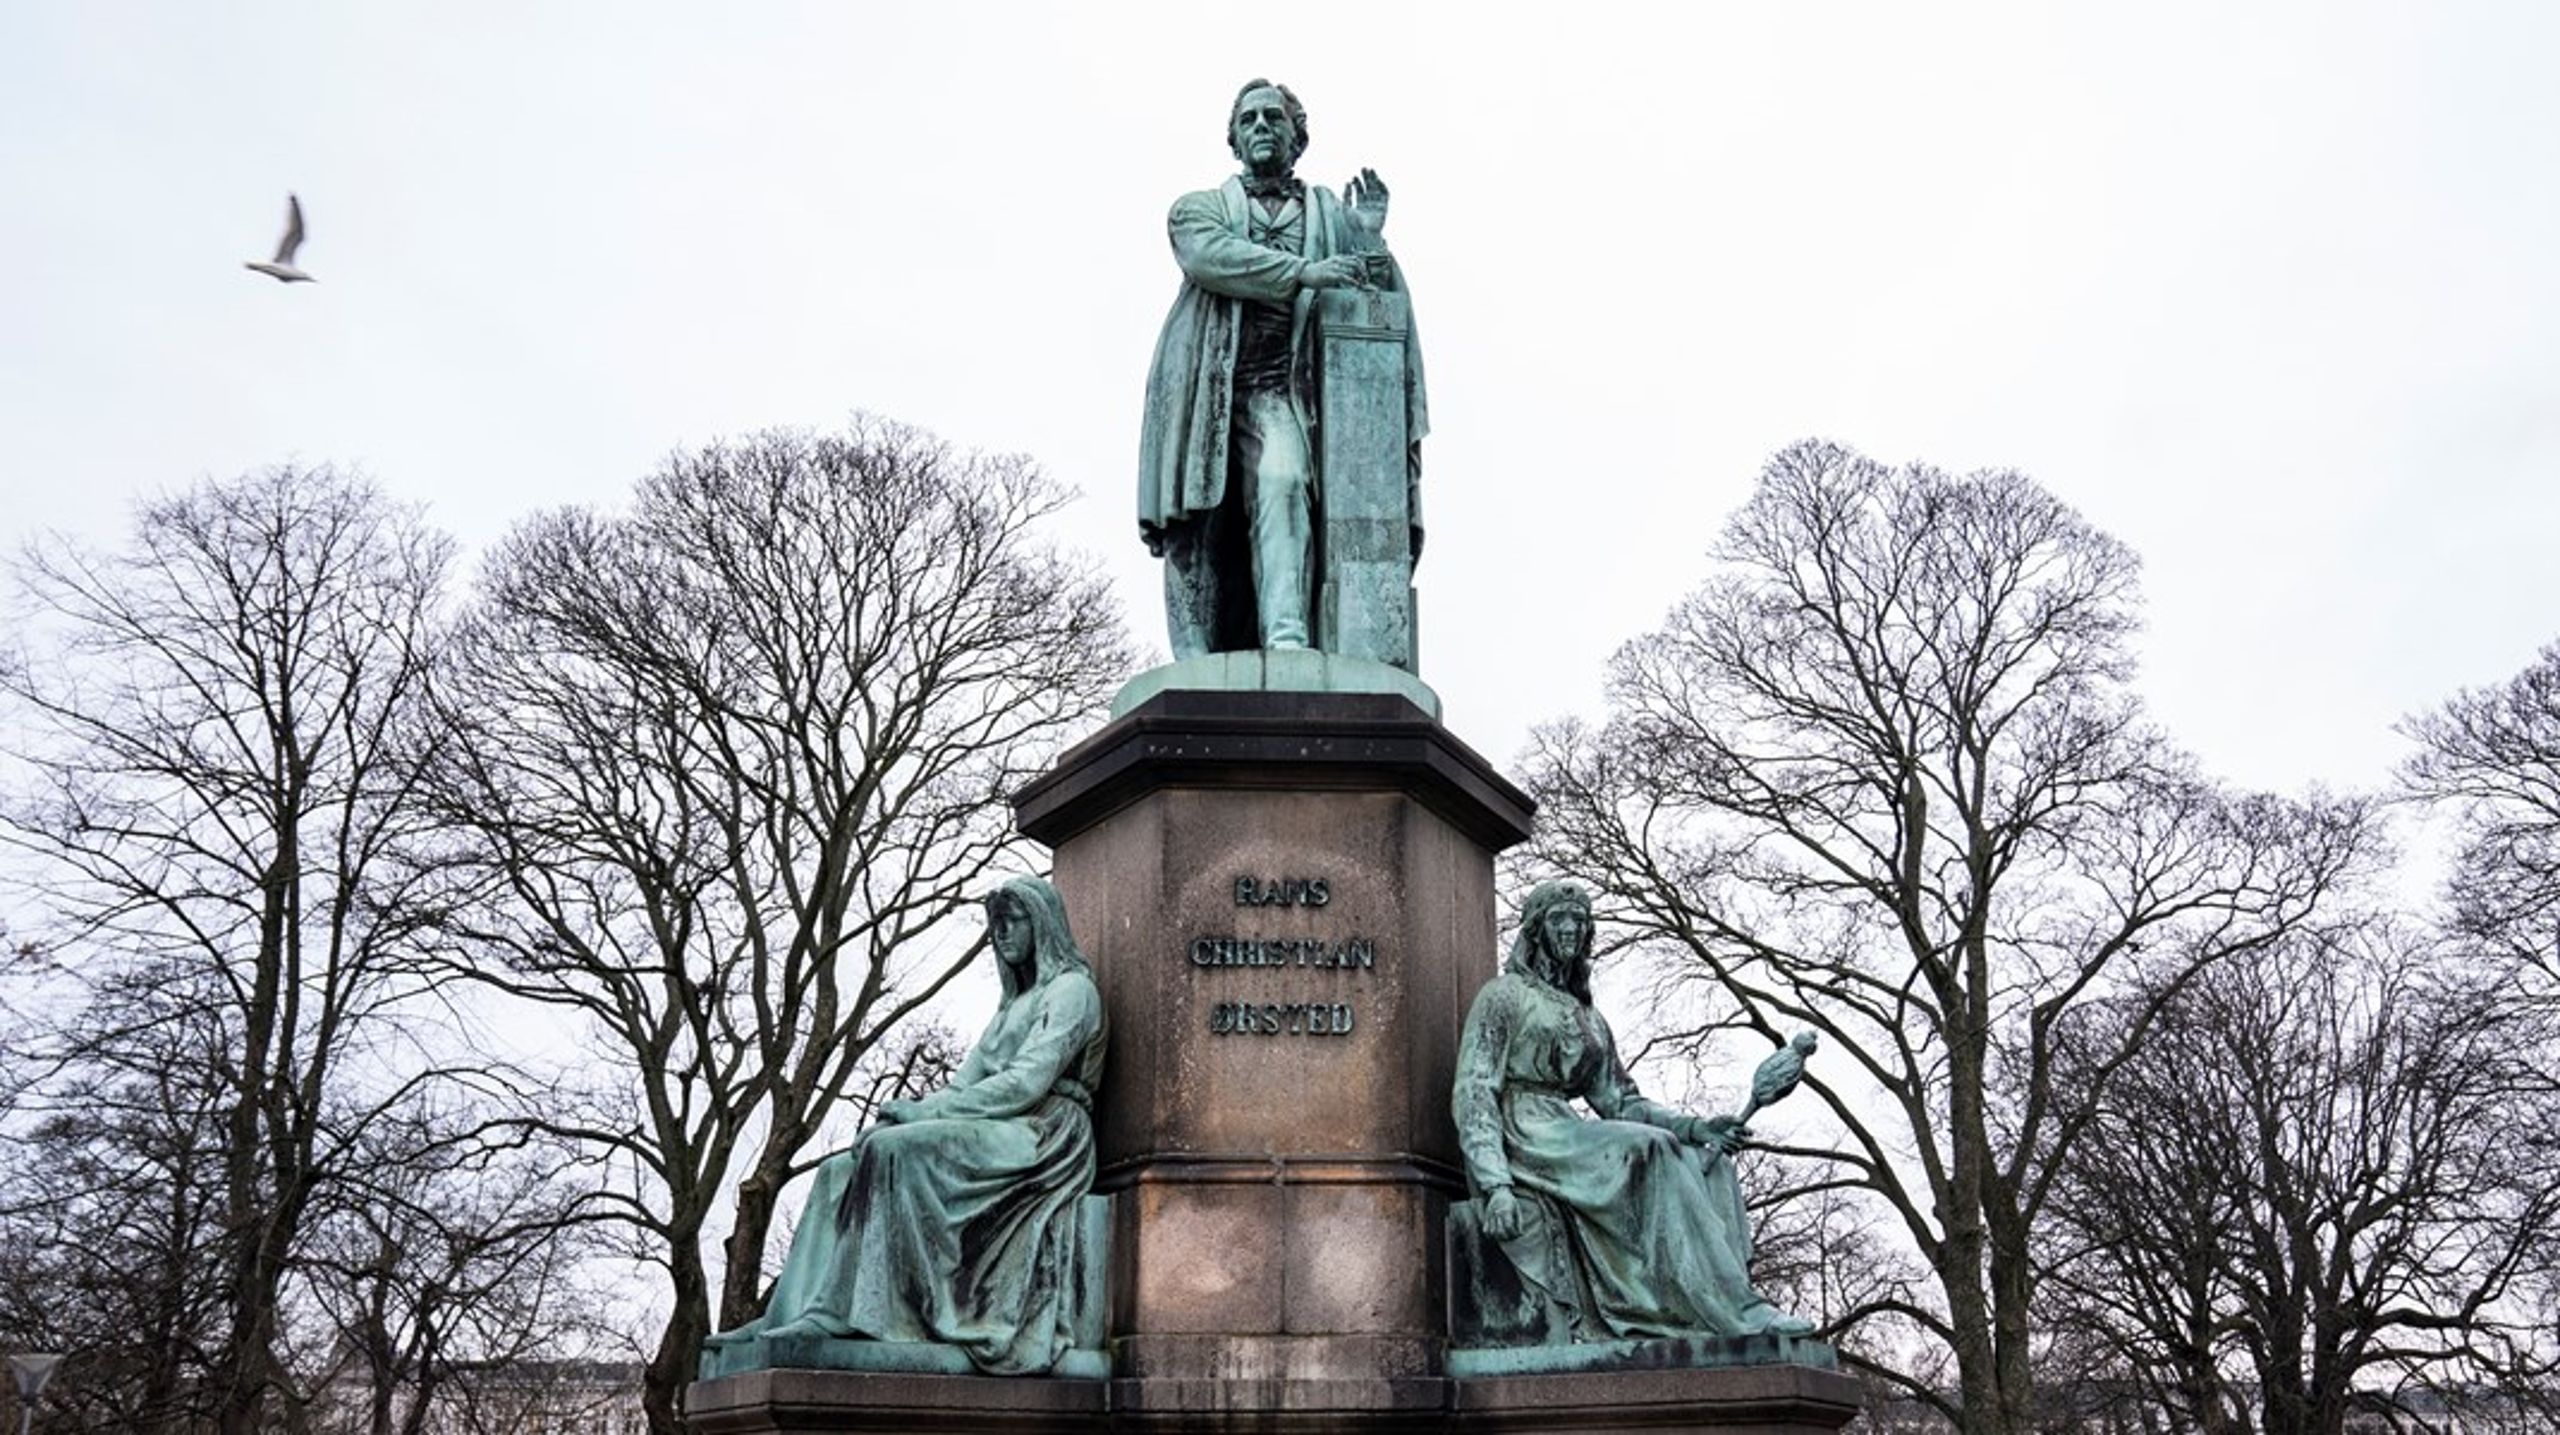 Ud af 101 statuer af historiske personer i København, er der lige nu kun fem statuer af kvinder, skriver Stine Finné Toft og Frederik W. Kronborg. Her ses en statue af&nbsp;H. C. Ørsted i Ørstedsparken.